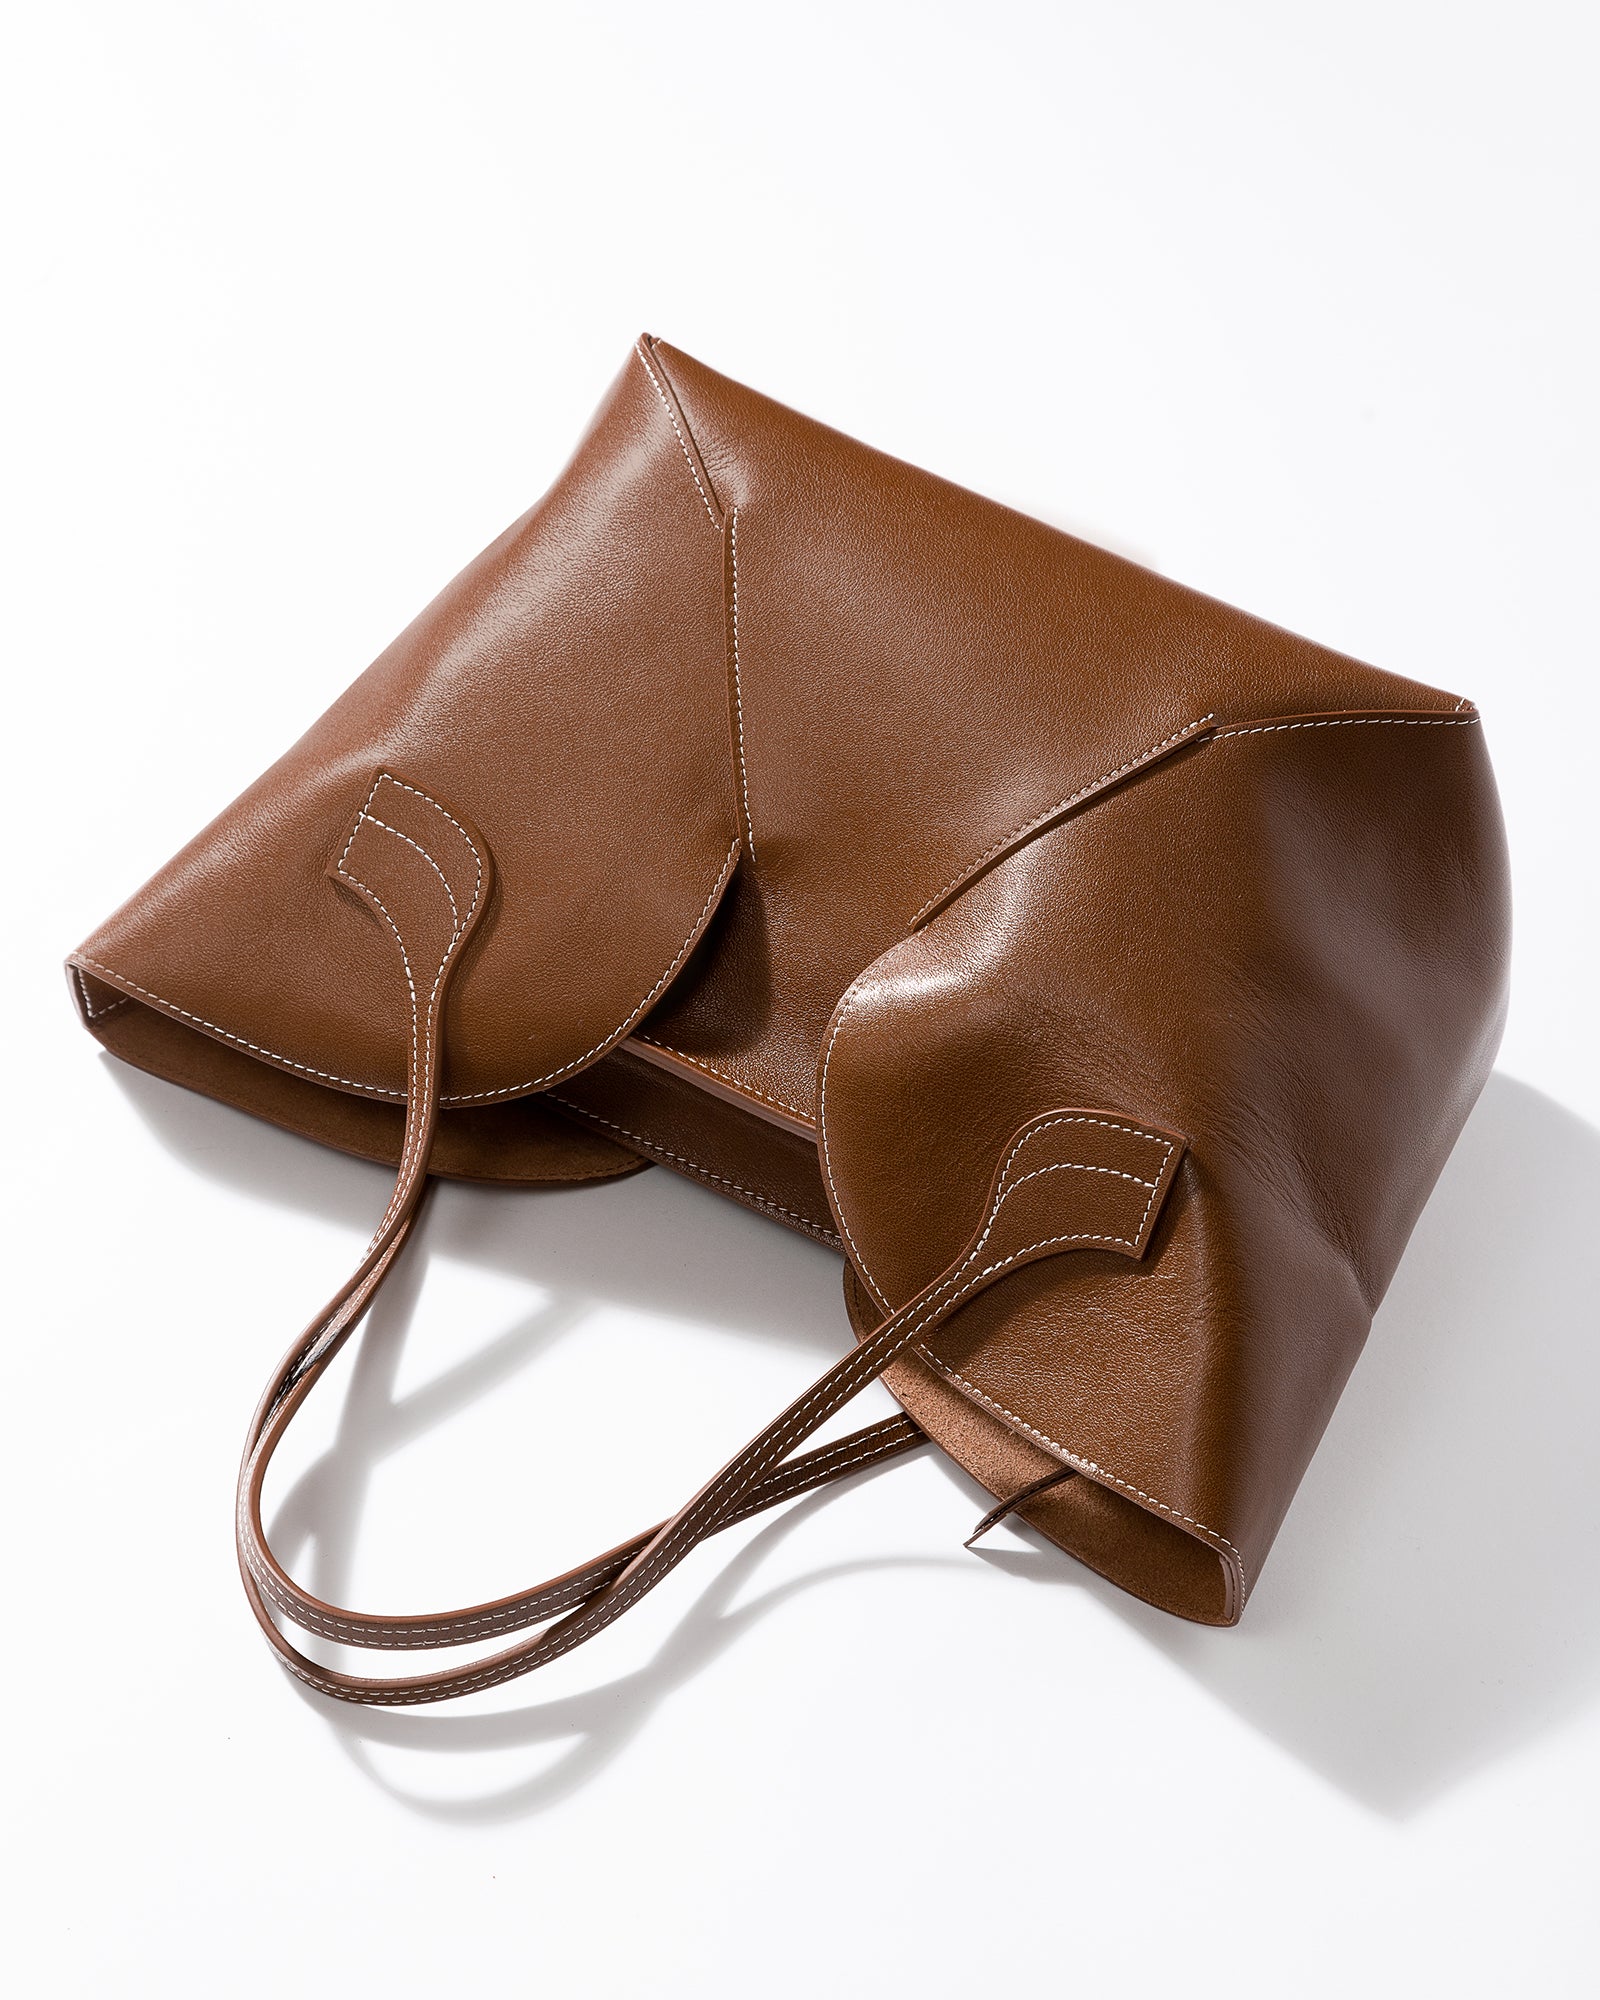 SEPAL - Tulip Shape Tote Bag – Hereu Studio